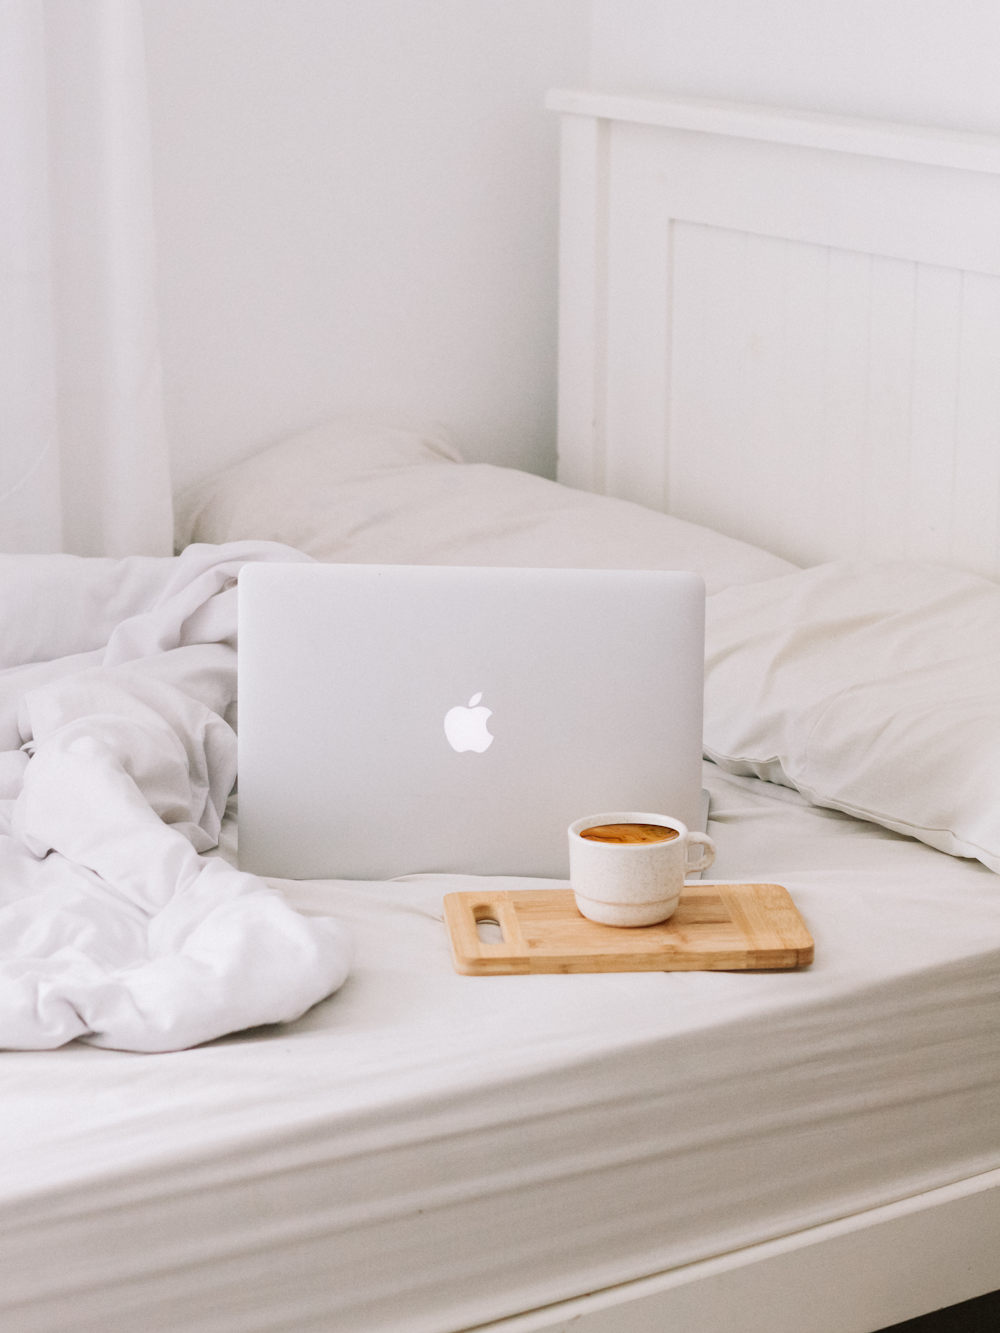 MacBook à côté d’une tasse de thé avec un café au lait